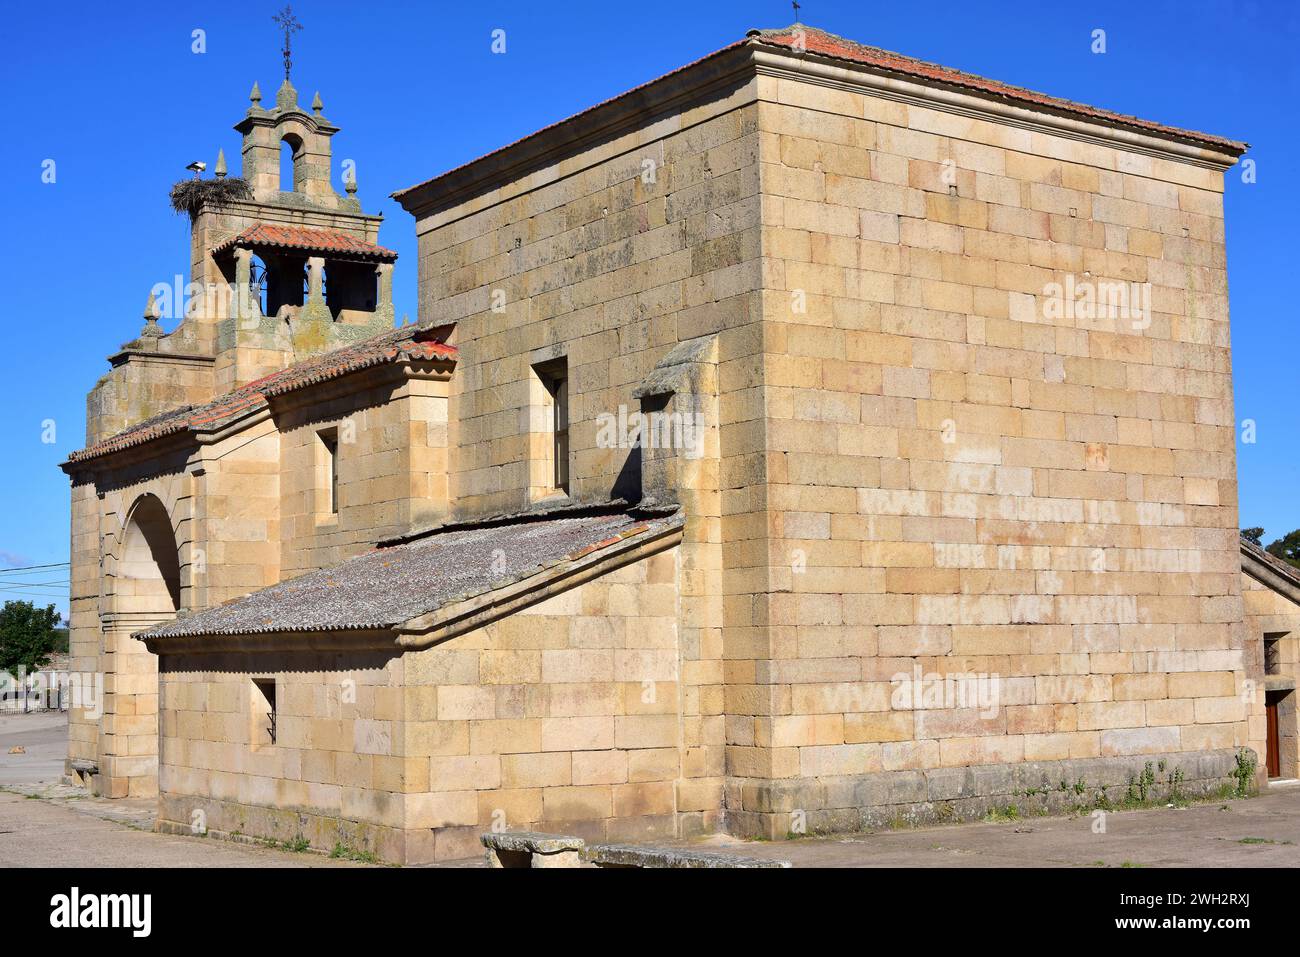 Fornillos de Fermoselle, Villar del Buey municipality. Parish church. Zamora province, Castilla y Leon, Spain. Stock Photo